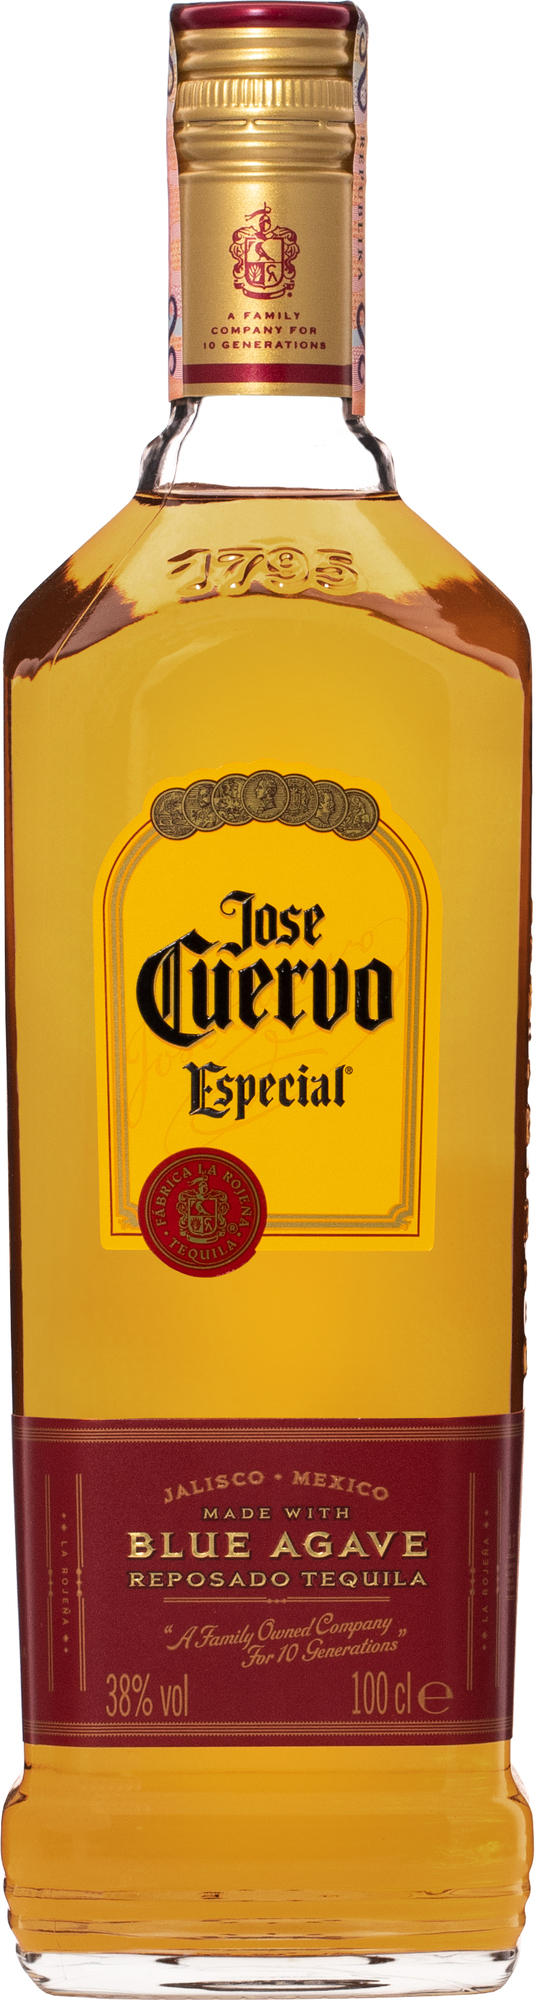 Jose Cuervo Especial Gold 1l 38%